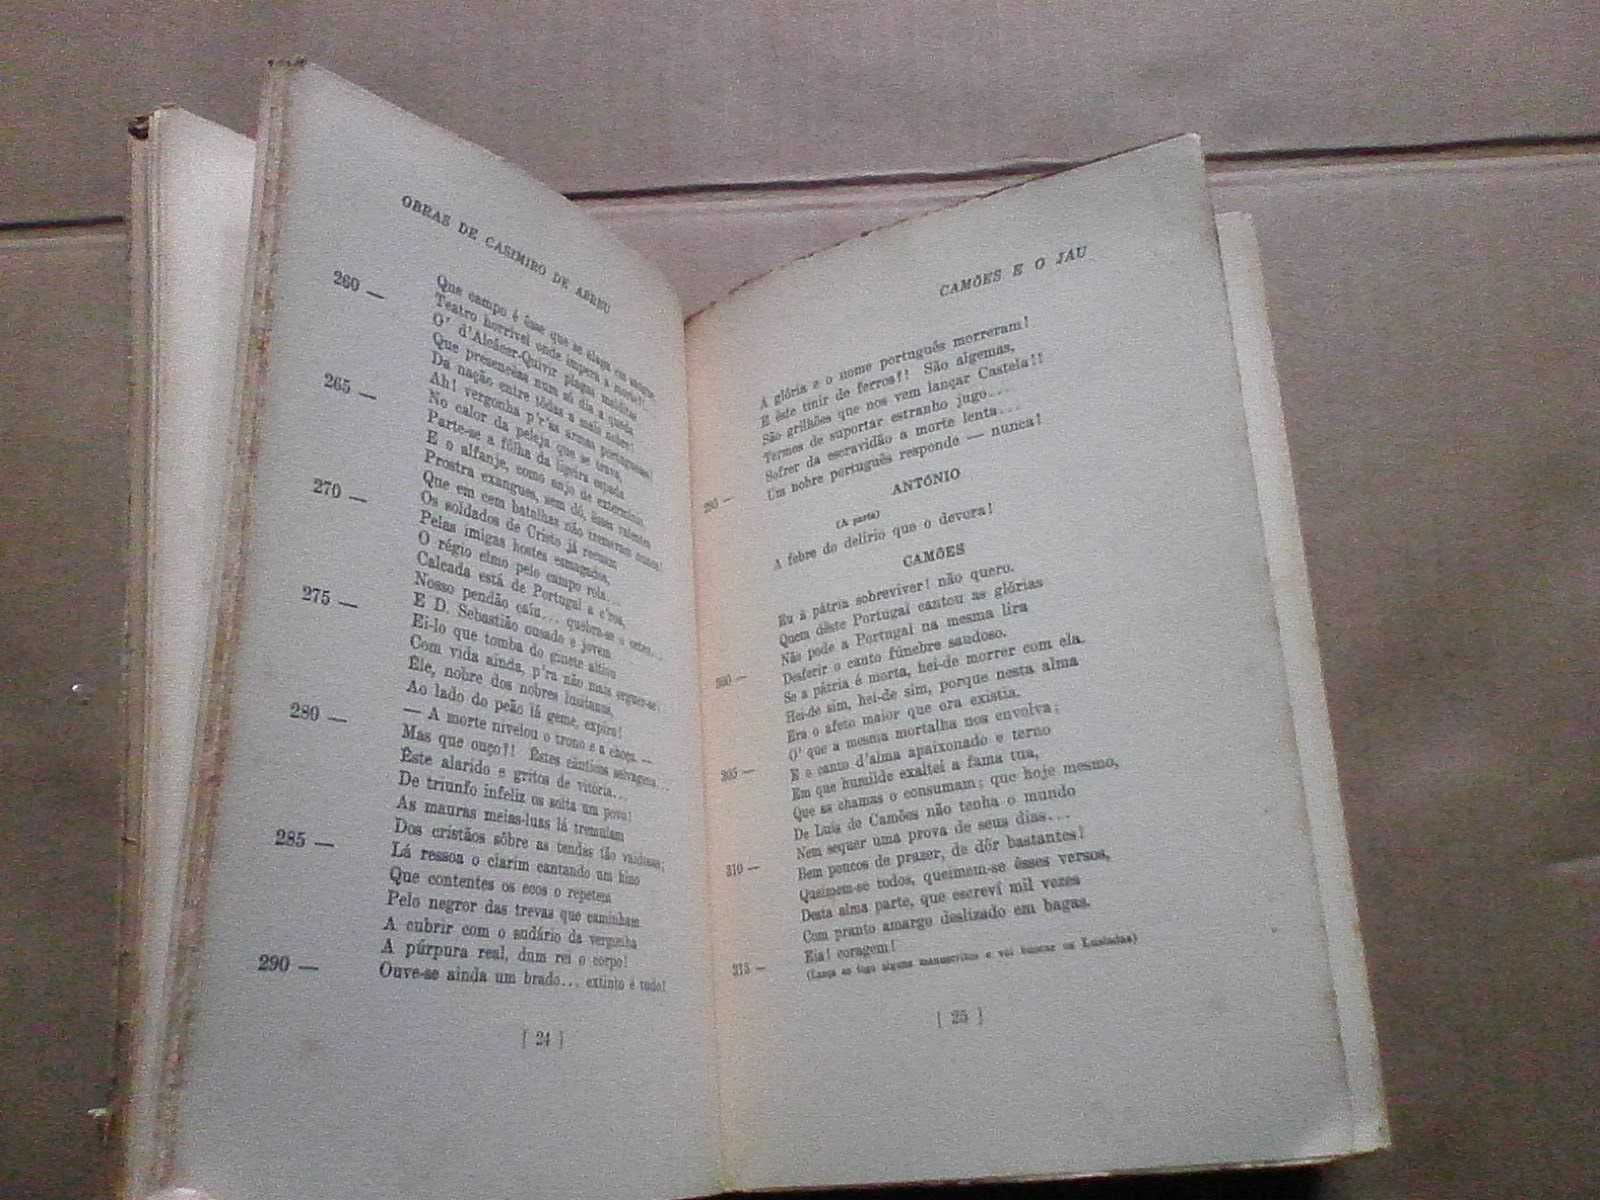 Casimiro de Abreu - Edição comemorativa do Centenário do poeta nº23